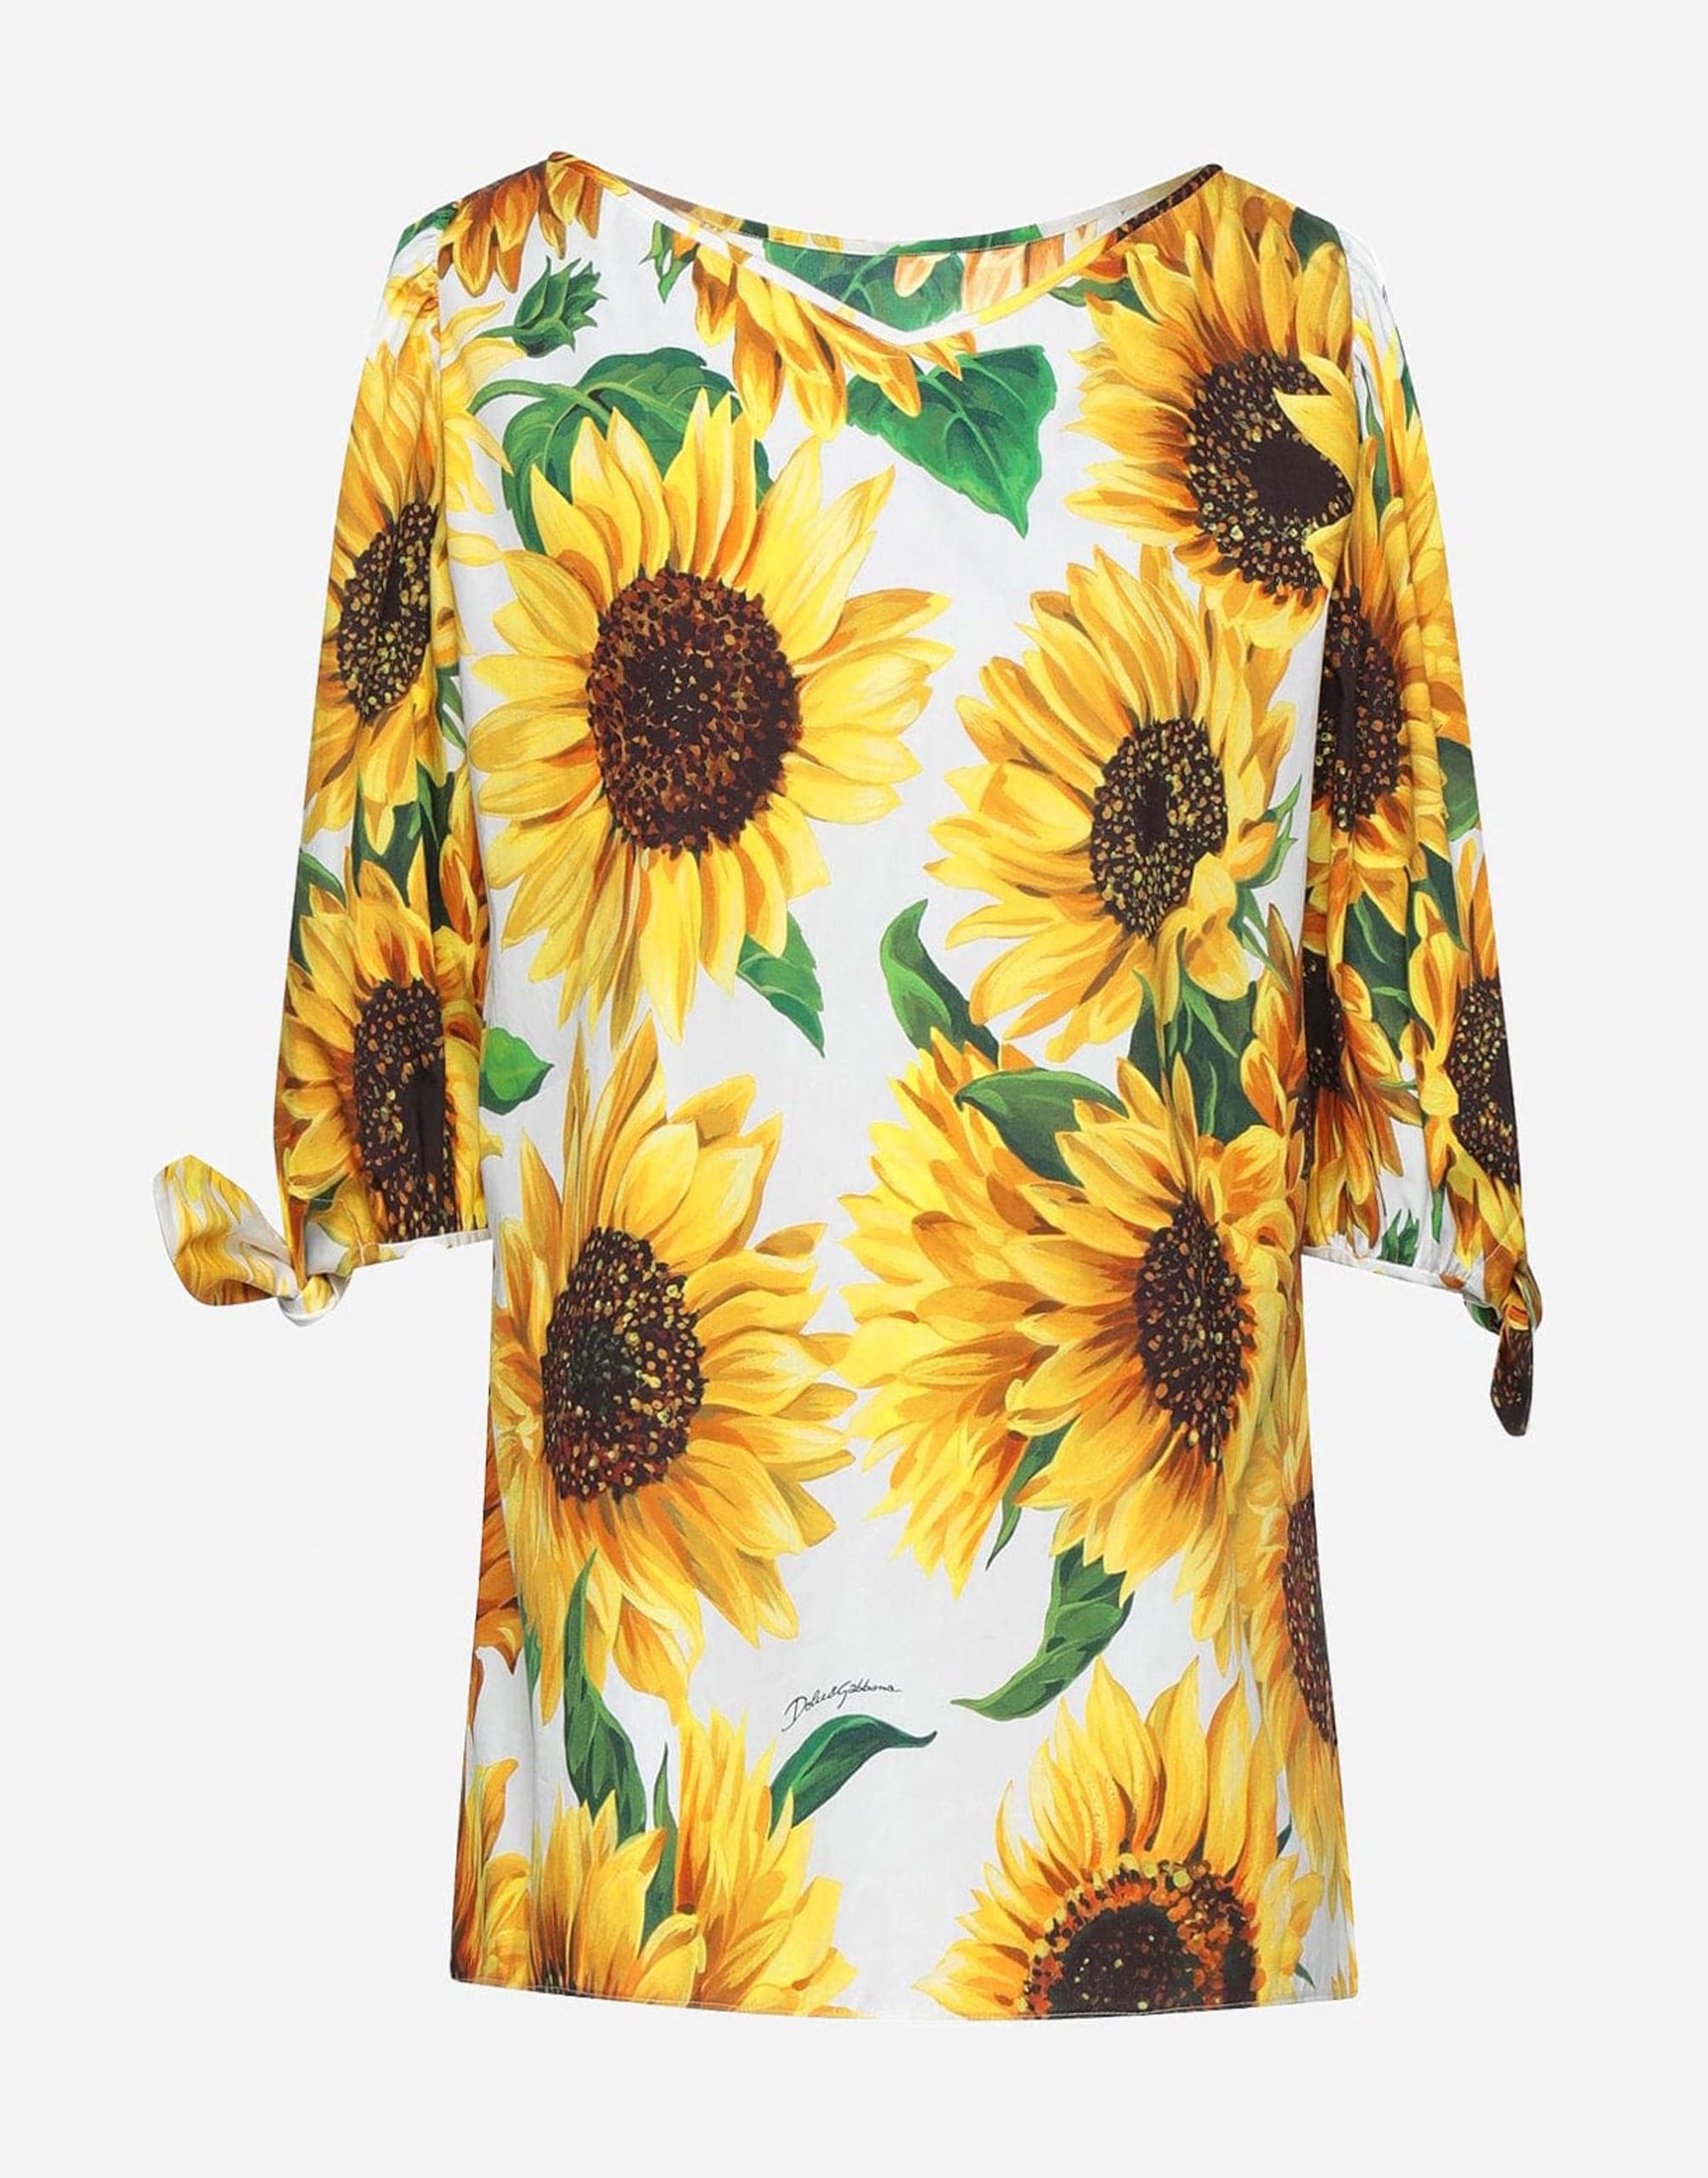 Dolce & Gabbana Sunflower Print Blouse